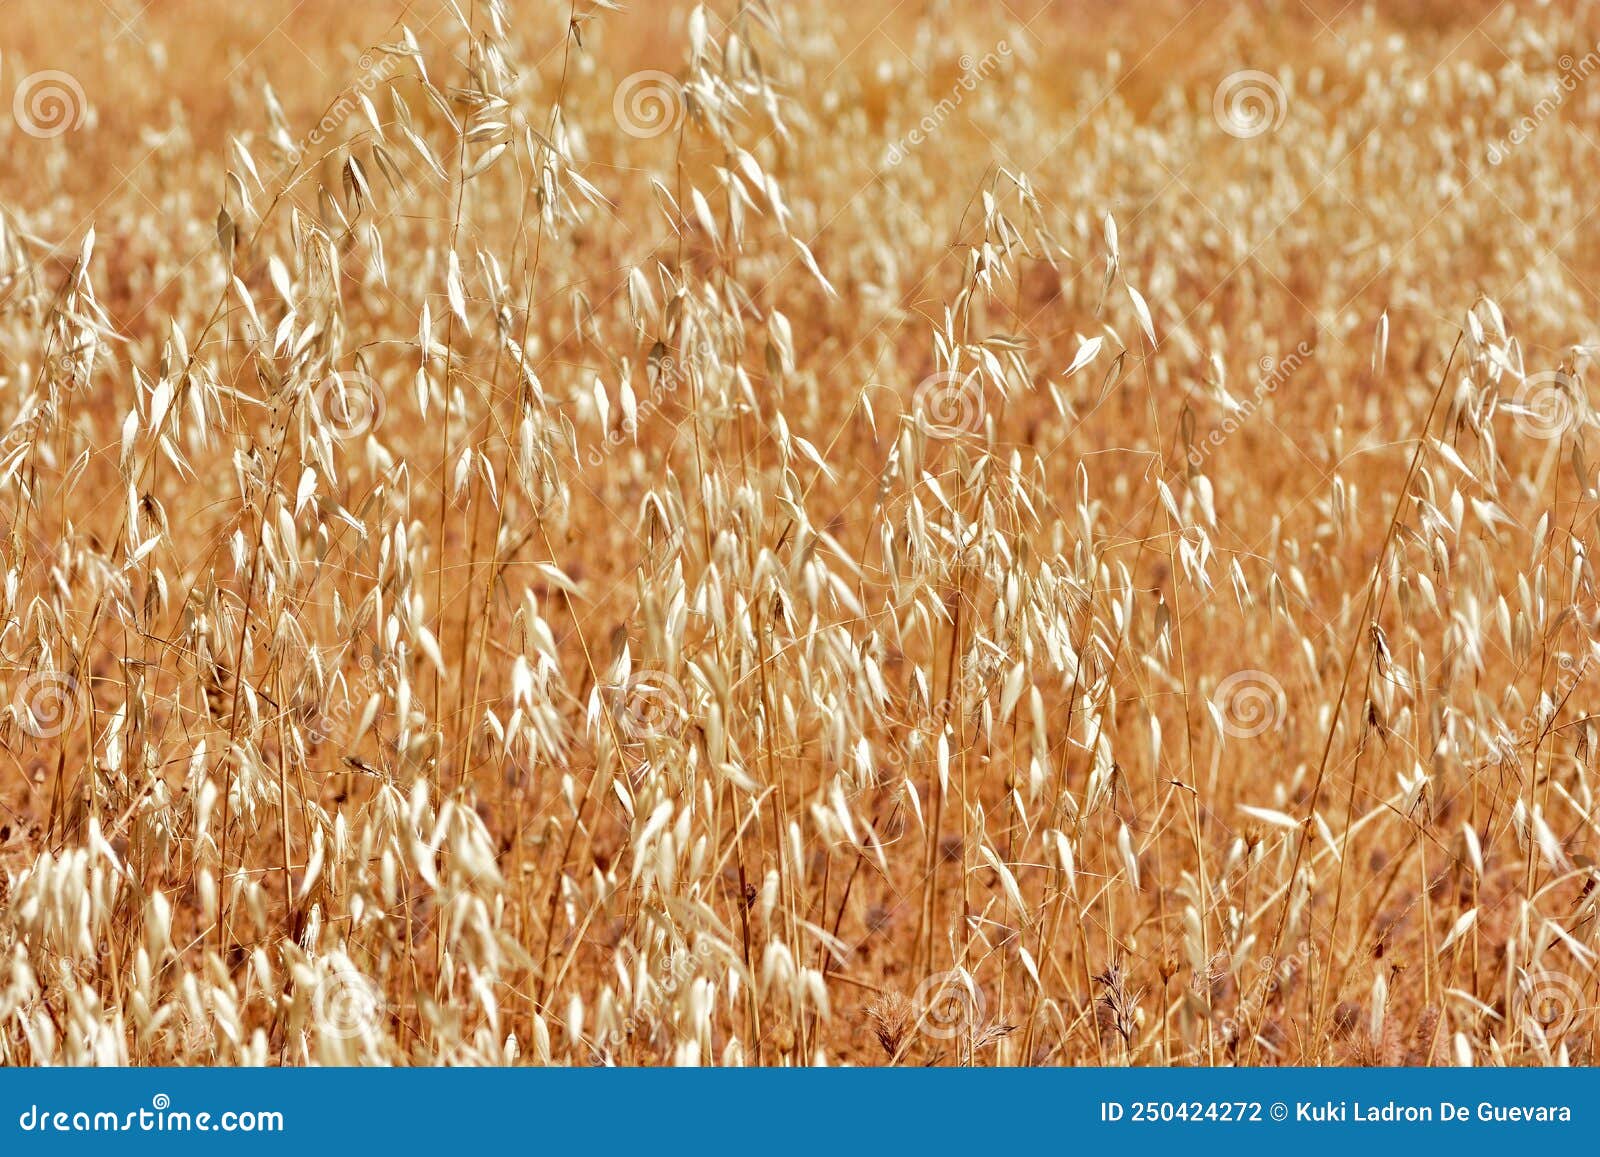 field of dry wild oats in summer